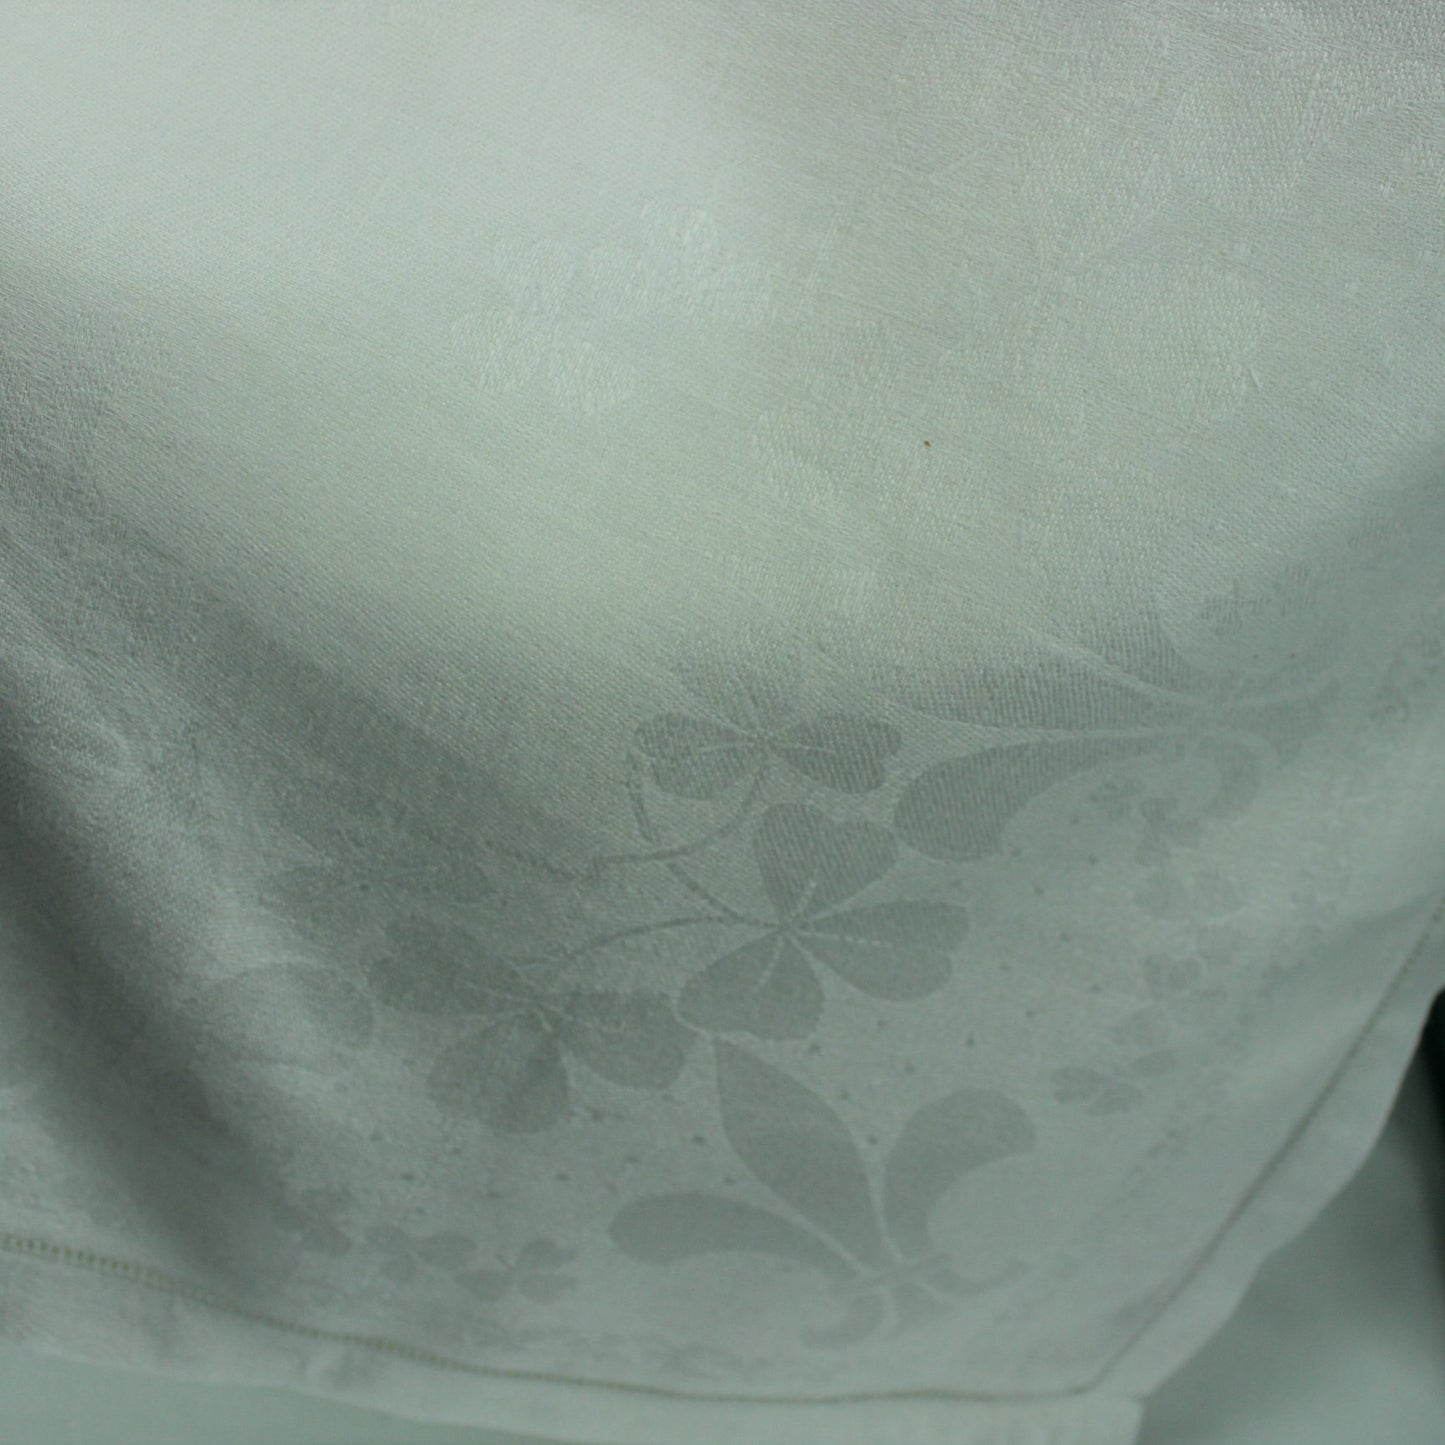 Heavy White Cotton Damask Tablecloth Fleur de Lis and Clover Design 55" X 66 closeup subtle design